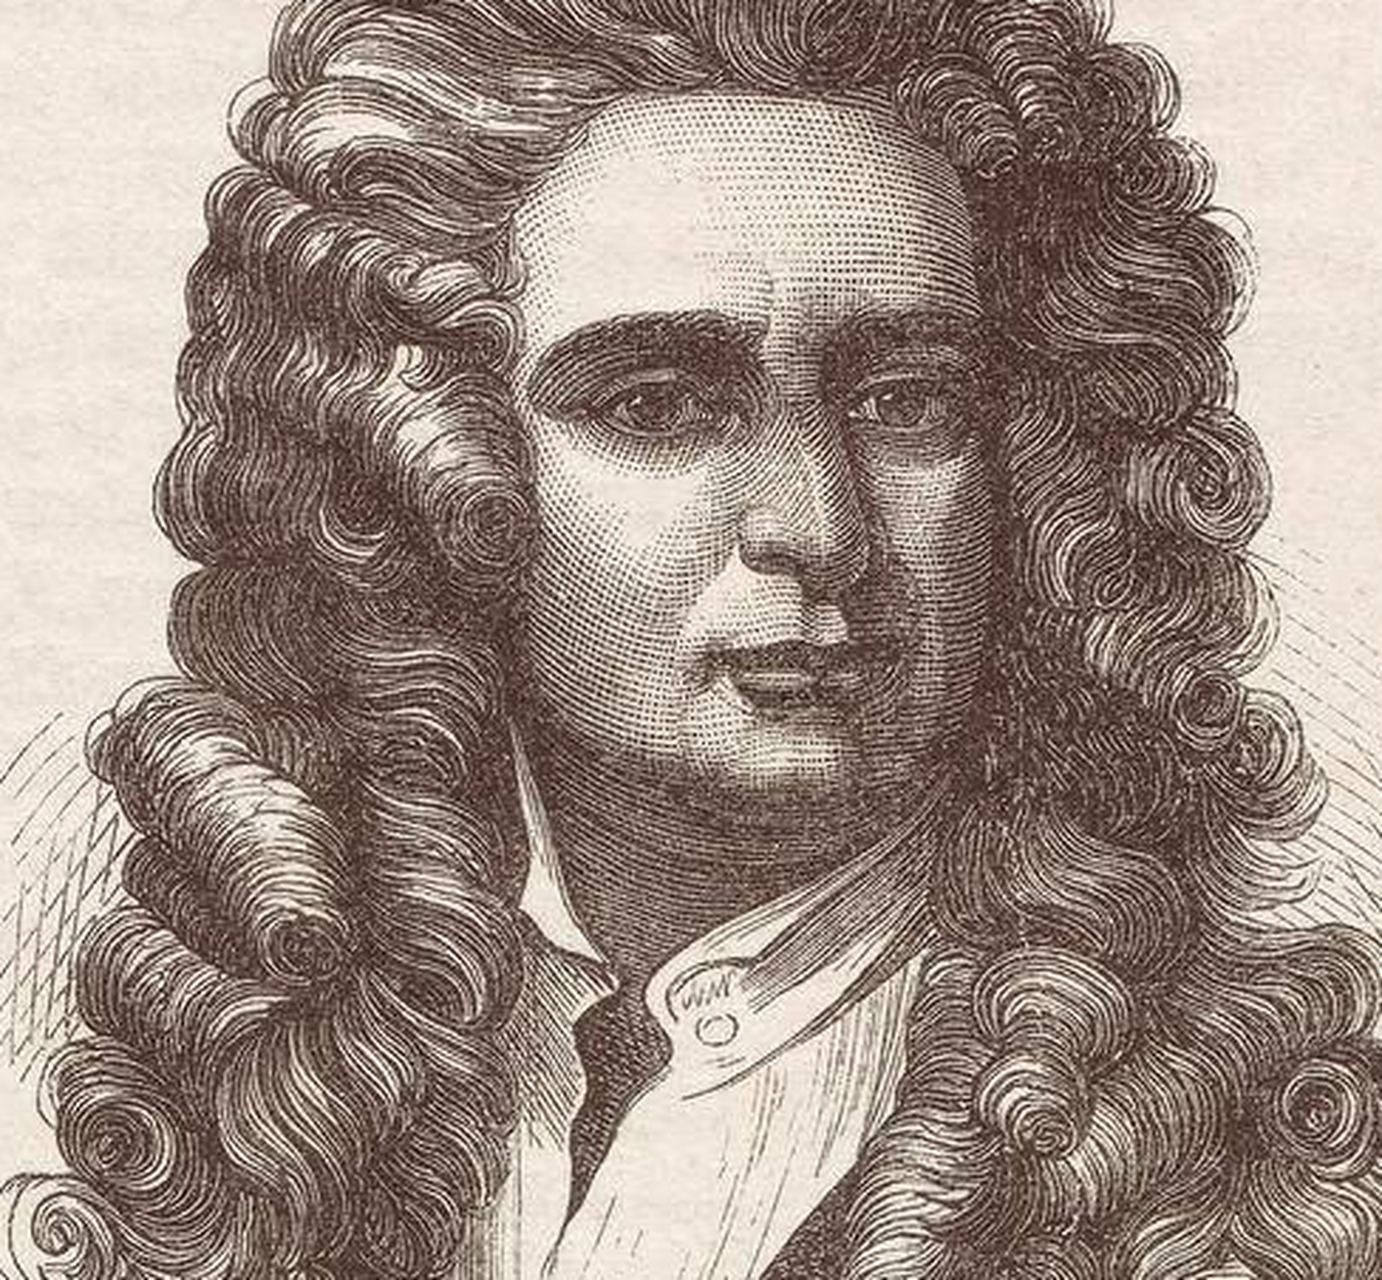 牛顿的生平和成就  牛顿的童年时期比较孤独,但他很早就表现出了对